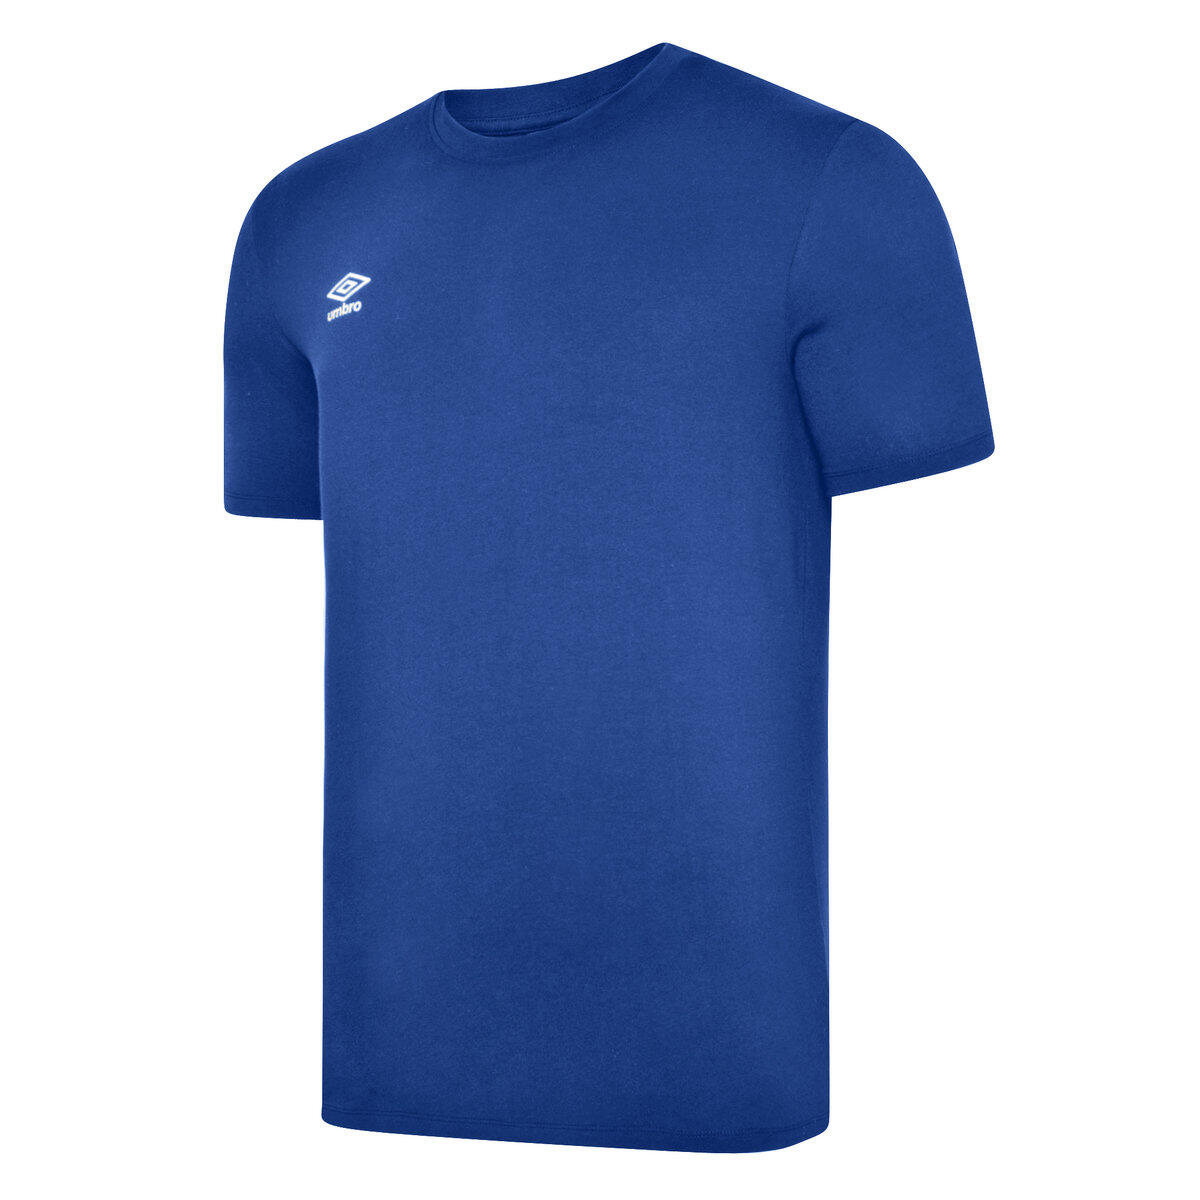 UMBRO Mens Club Leisure TShirt (Royal Blue/White)